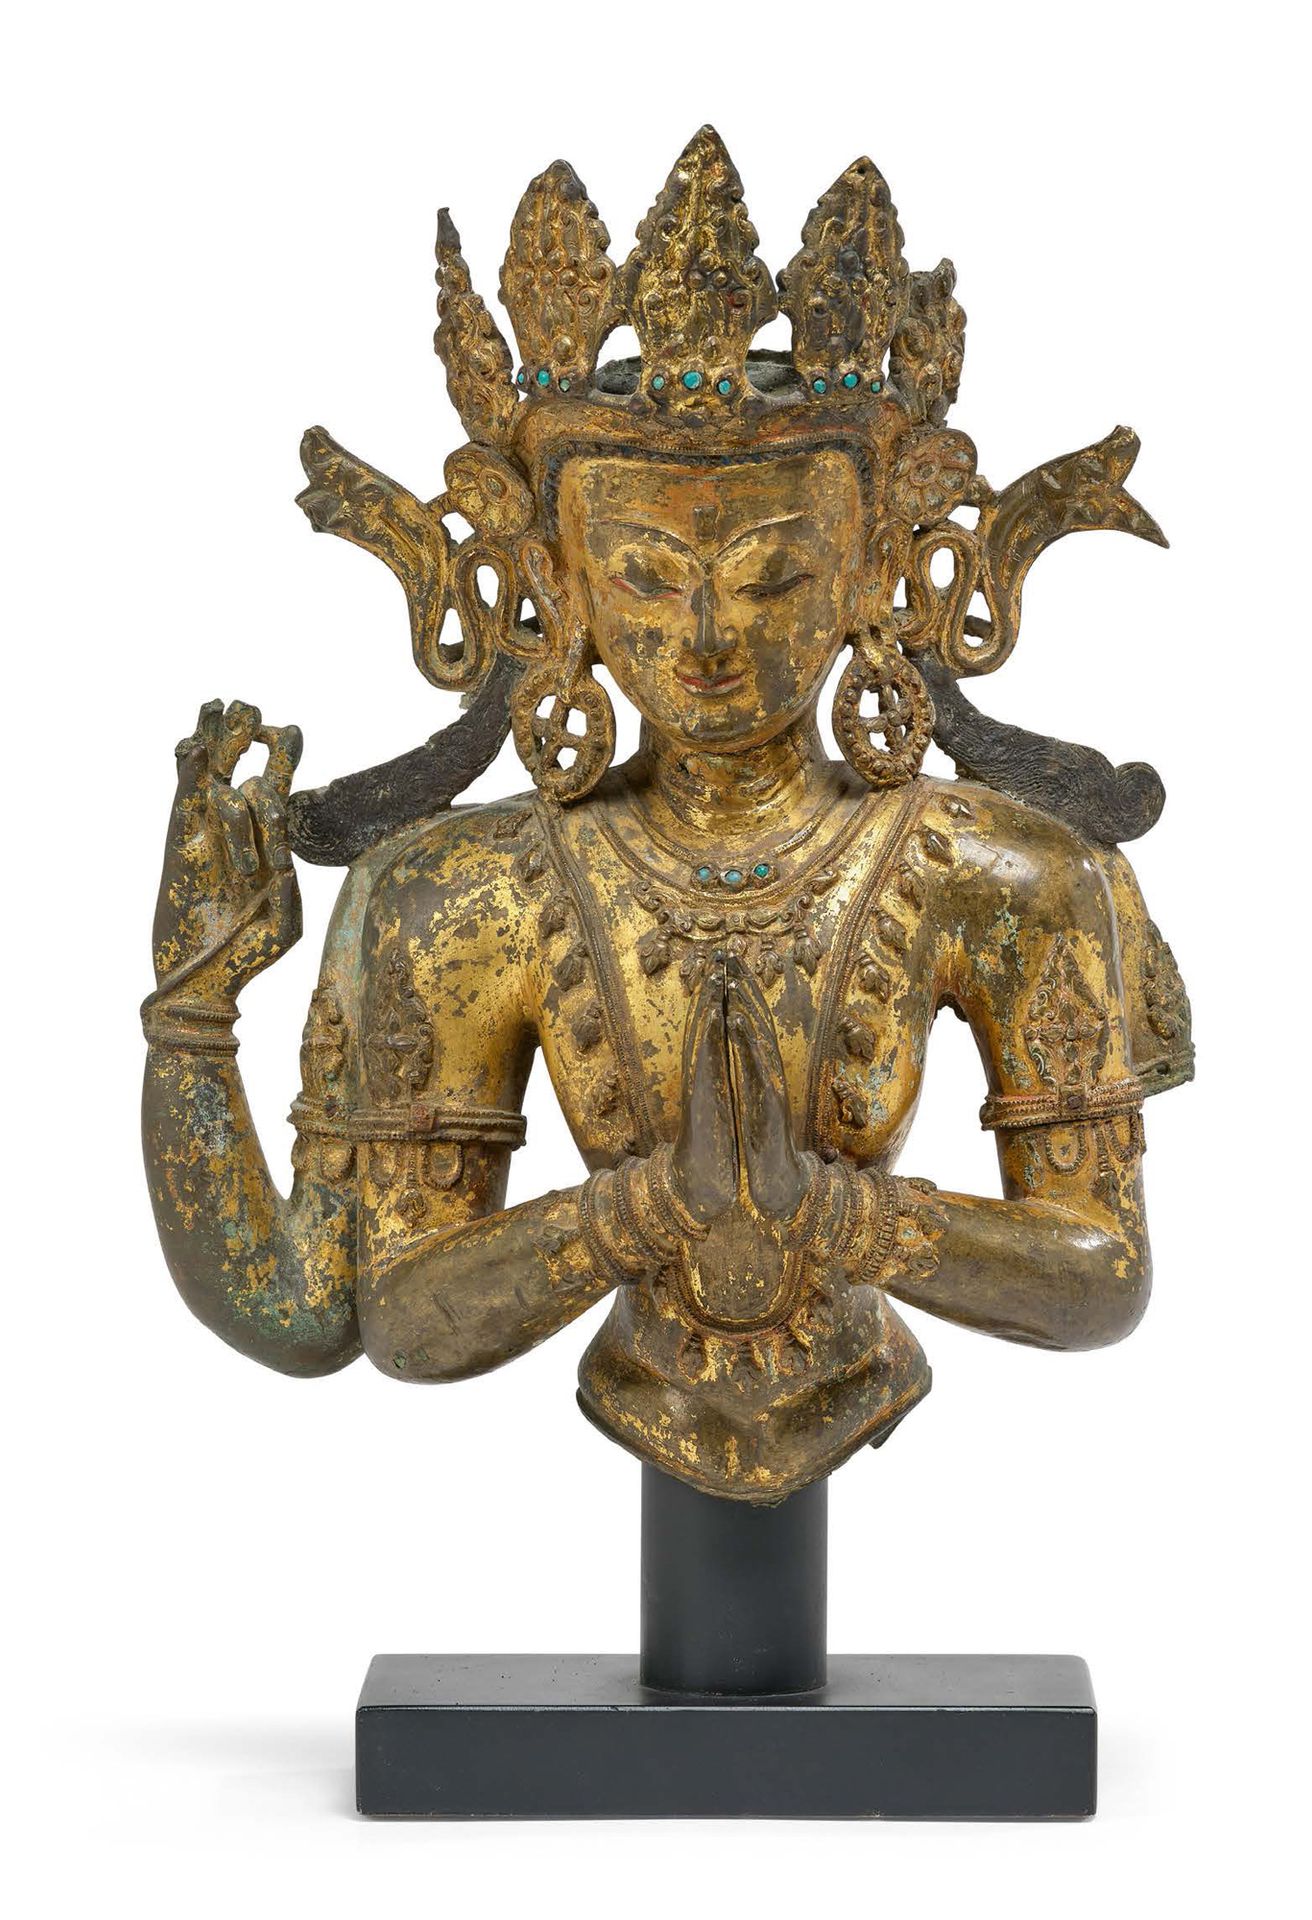 TIBET FIN DU XIVe - DÉBUT DU XVe SIÈCLE = 西藏地区 14世纪末至15世纪初
一尊重要的鎏金青铜四臂菩萨半身像